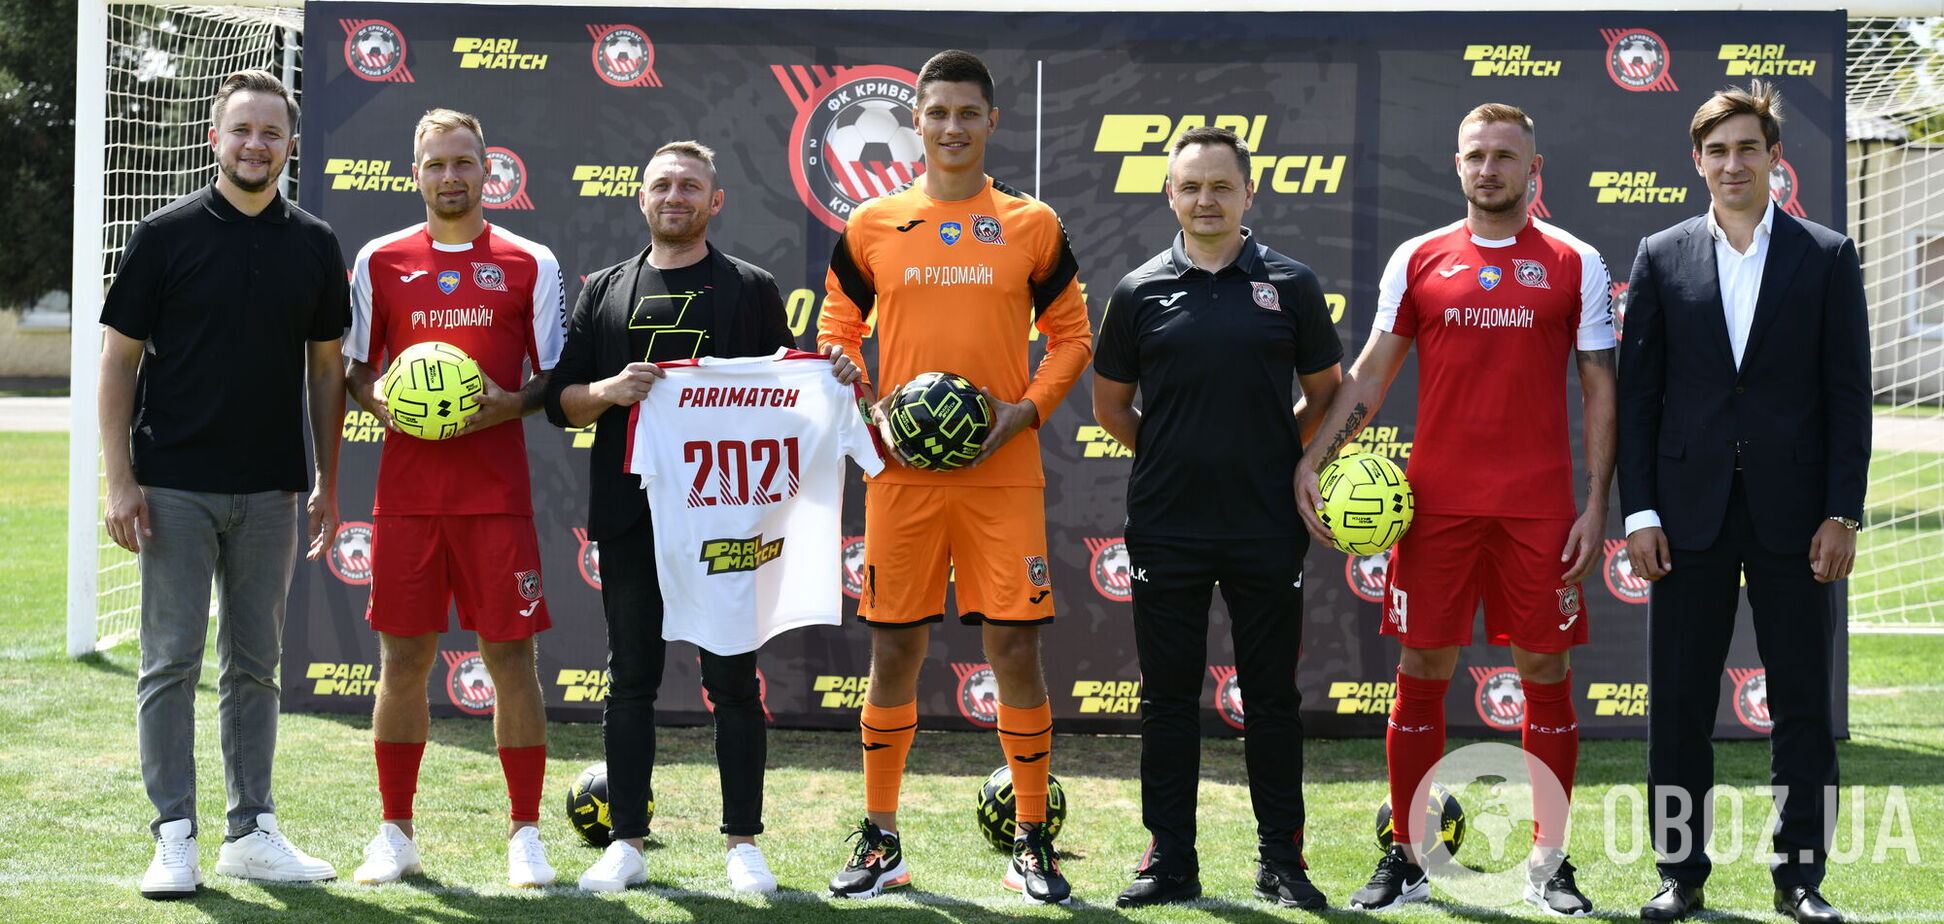 Parimatch став офіційним спонсором футбольного клубу 'Кривбас'